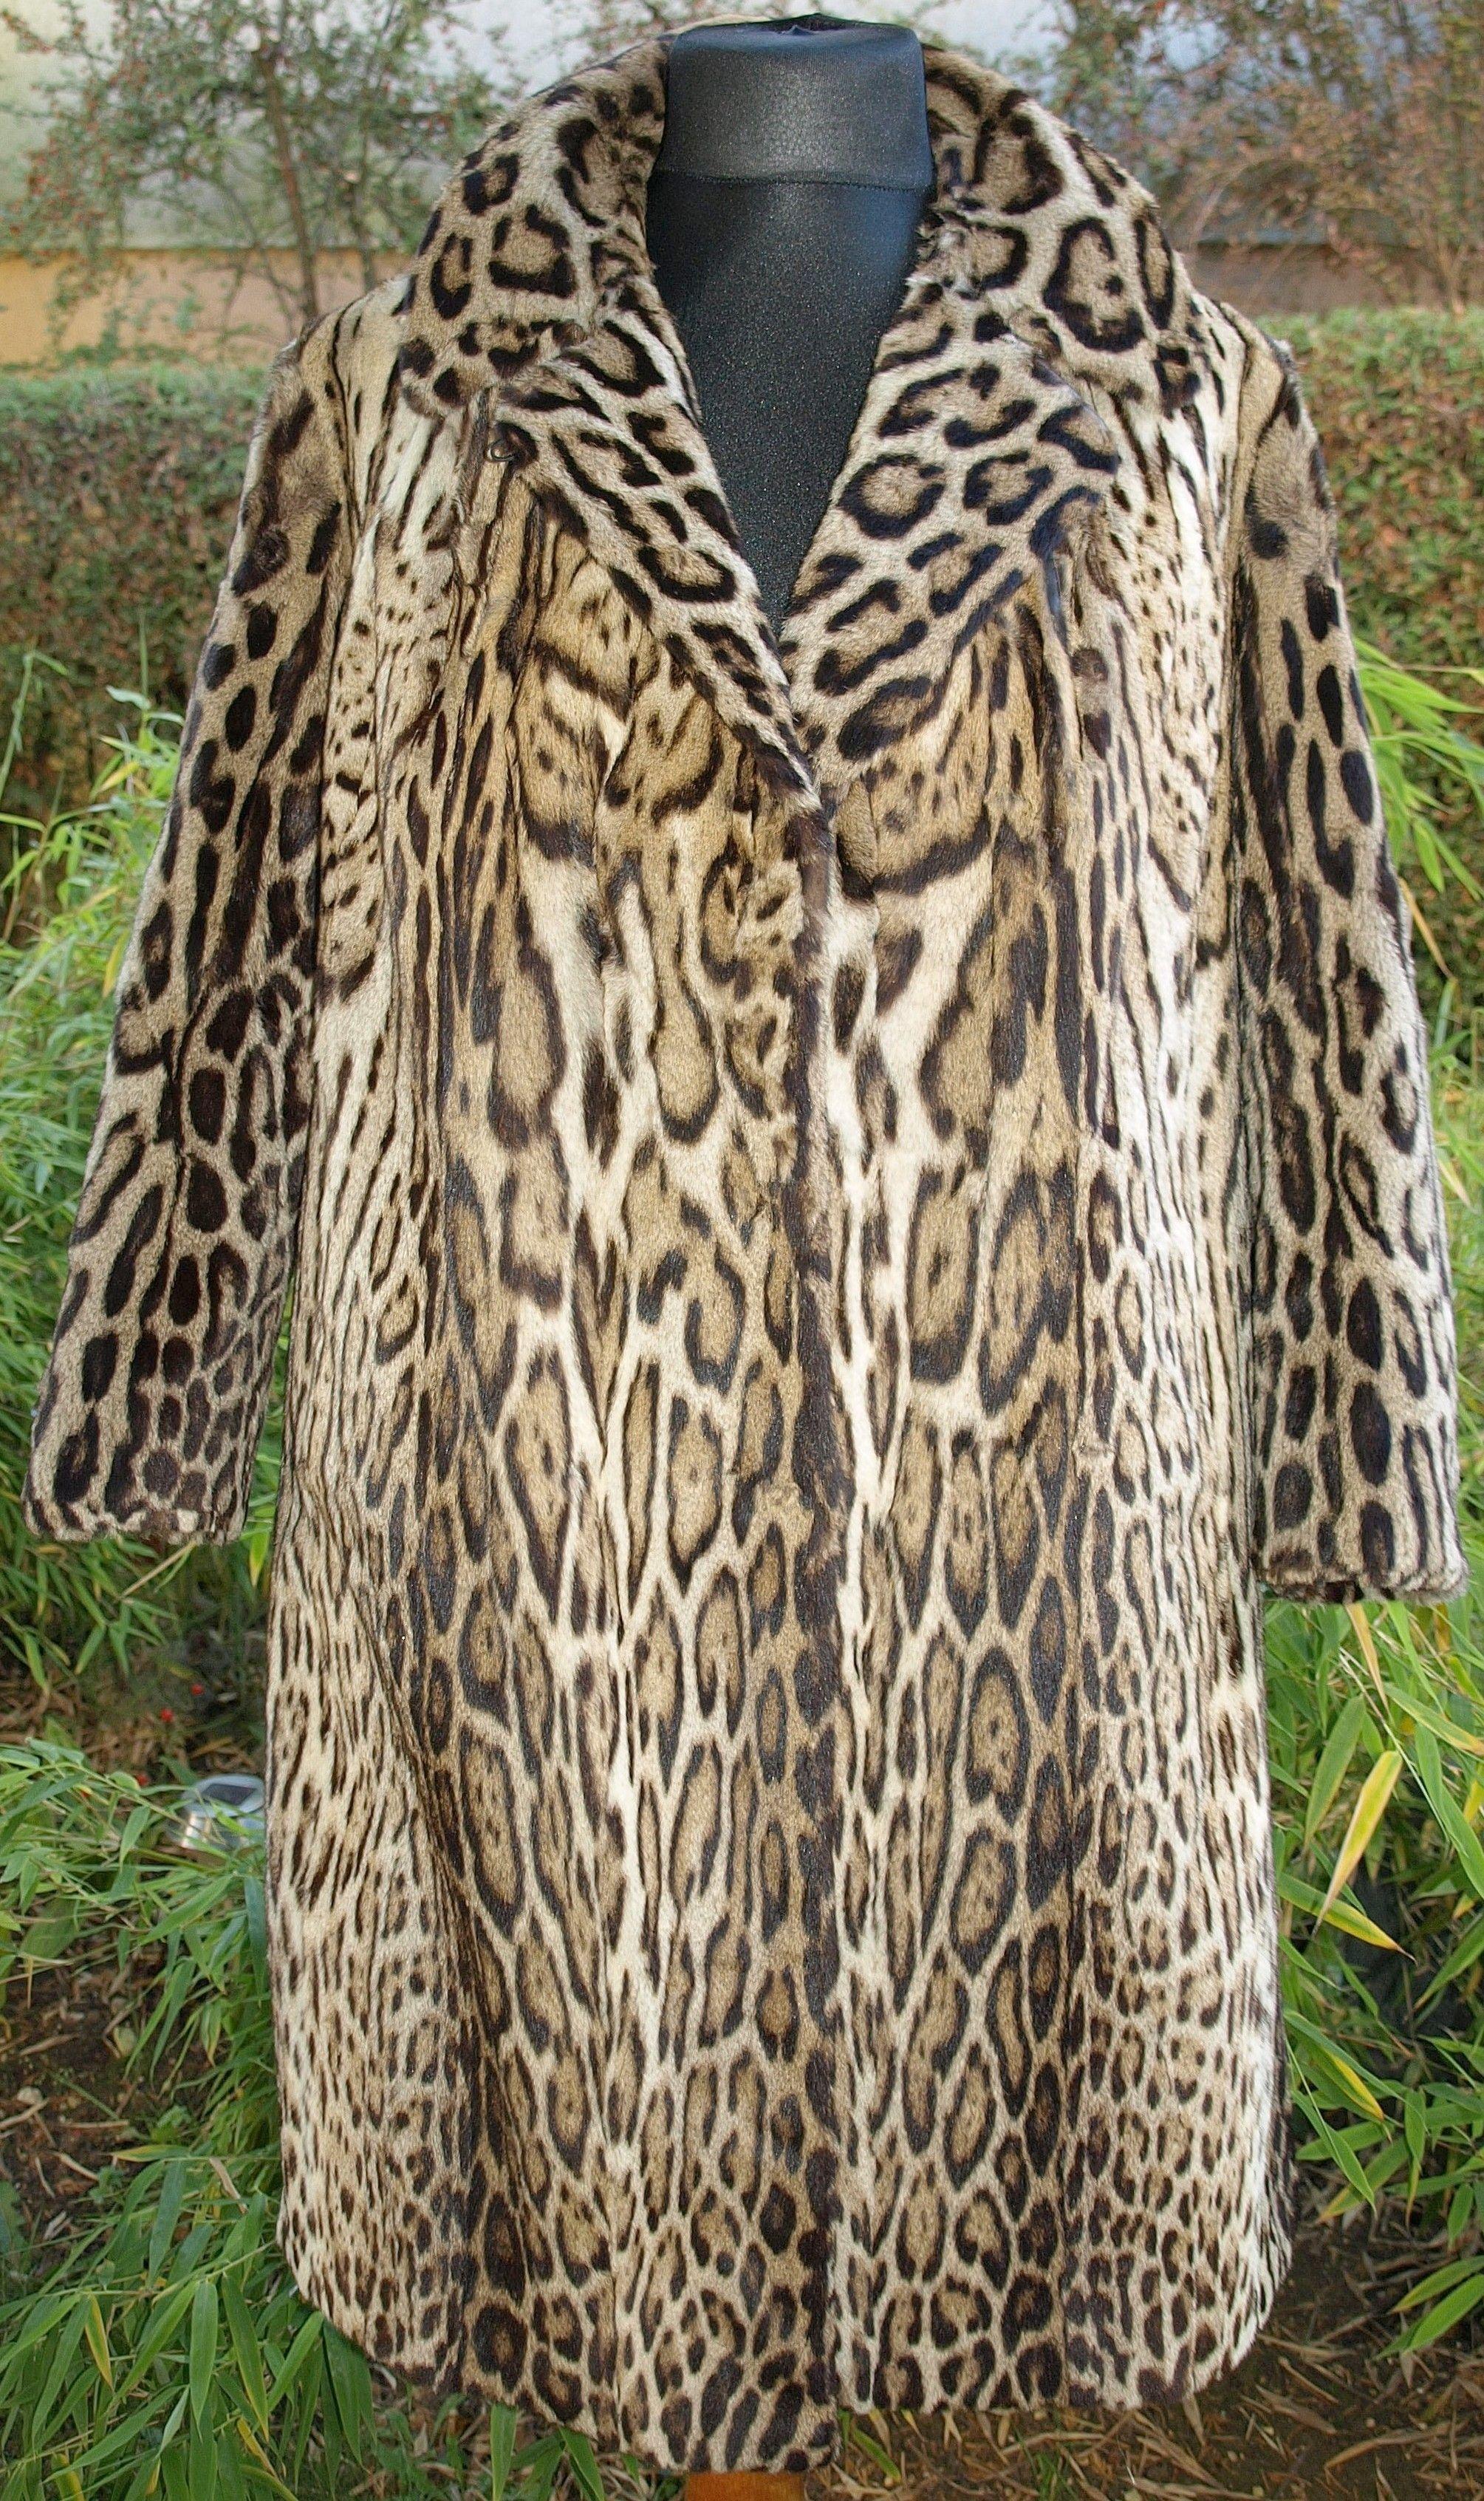 Ocelot Clothing Logo - Mexican Ocelot fur coat